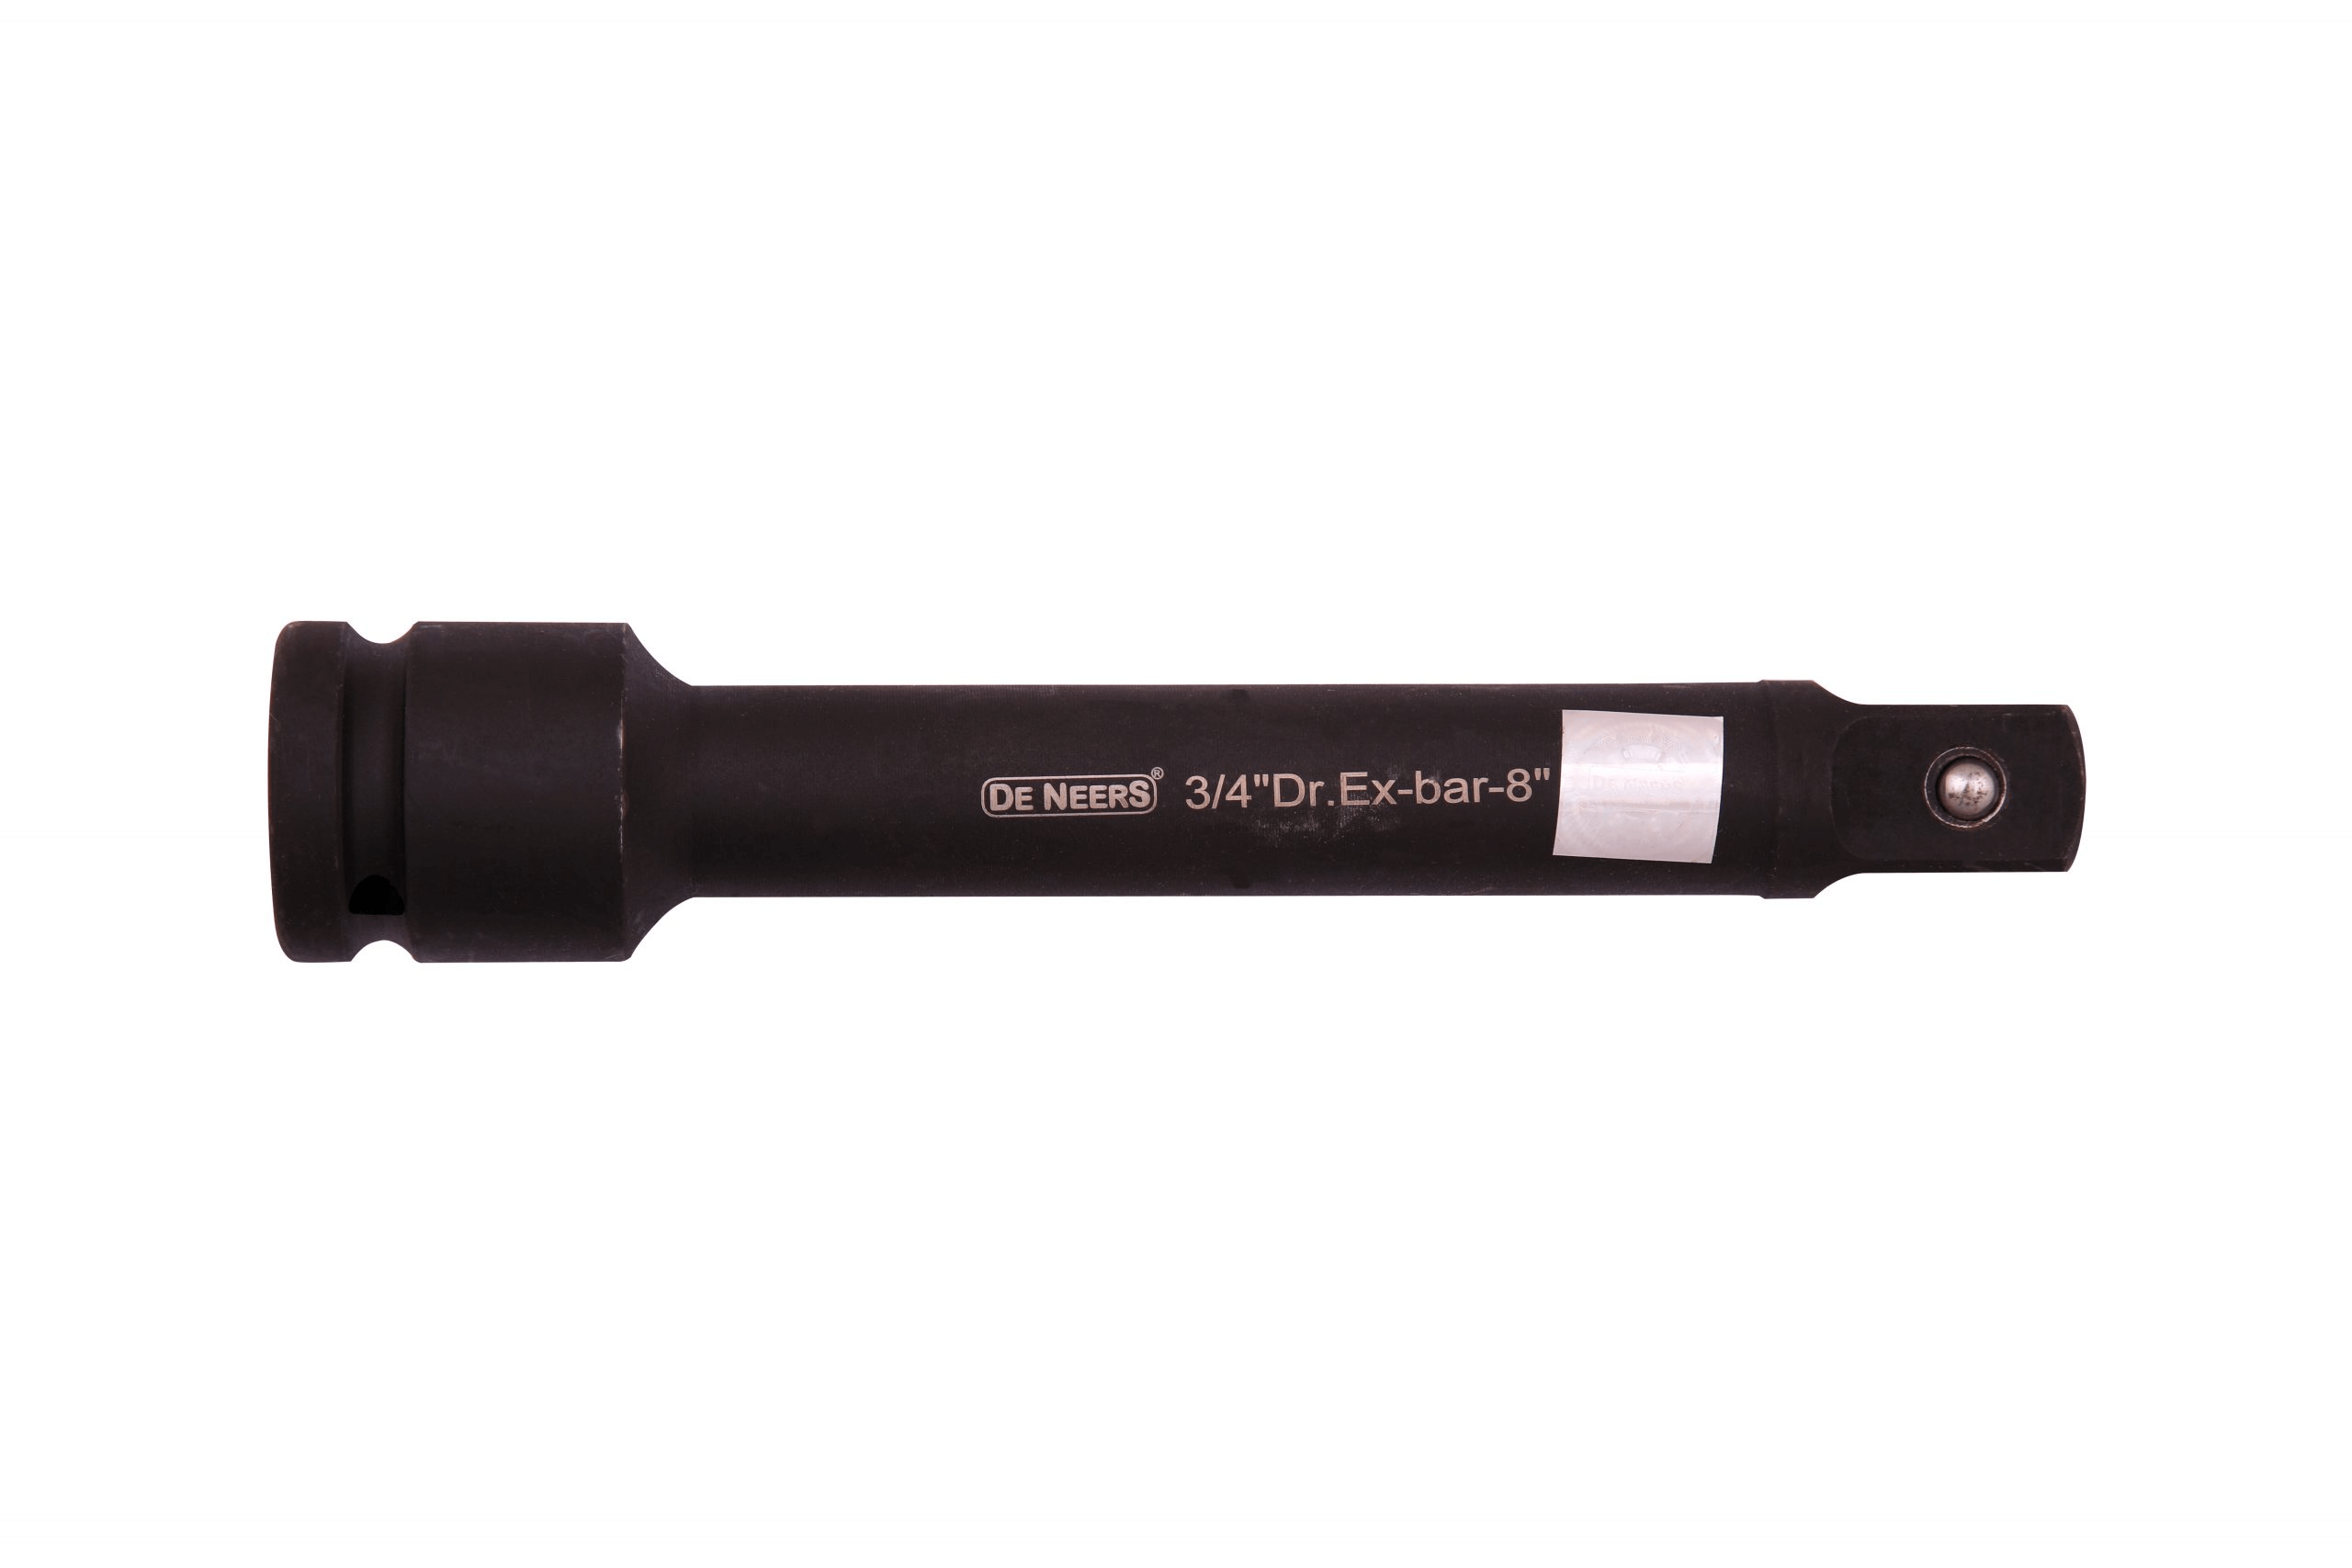 de-neers-1-2-inch-impact-extension-bar-75-mm